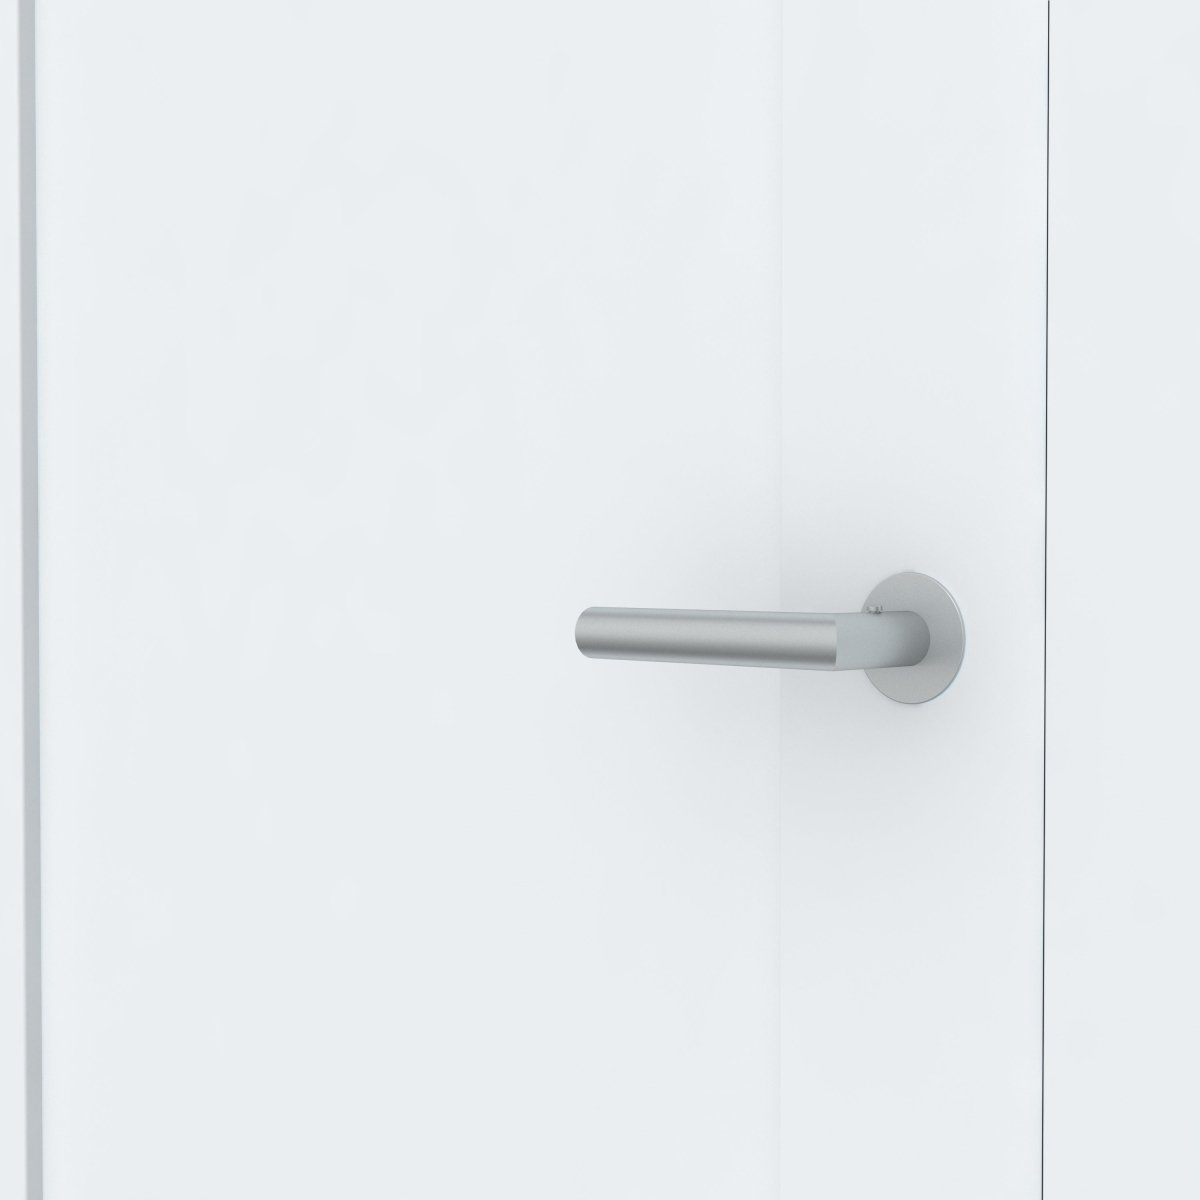 Stumpfeinschlagende Tür mit Zarge CPL Weißlack RAL 9003 Bergamont 1G - Meine Tür